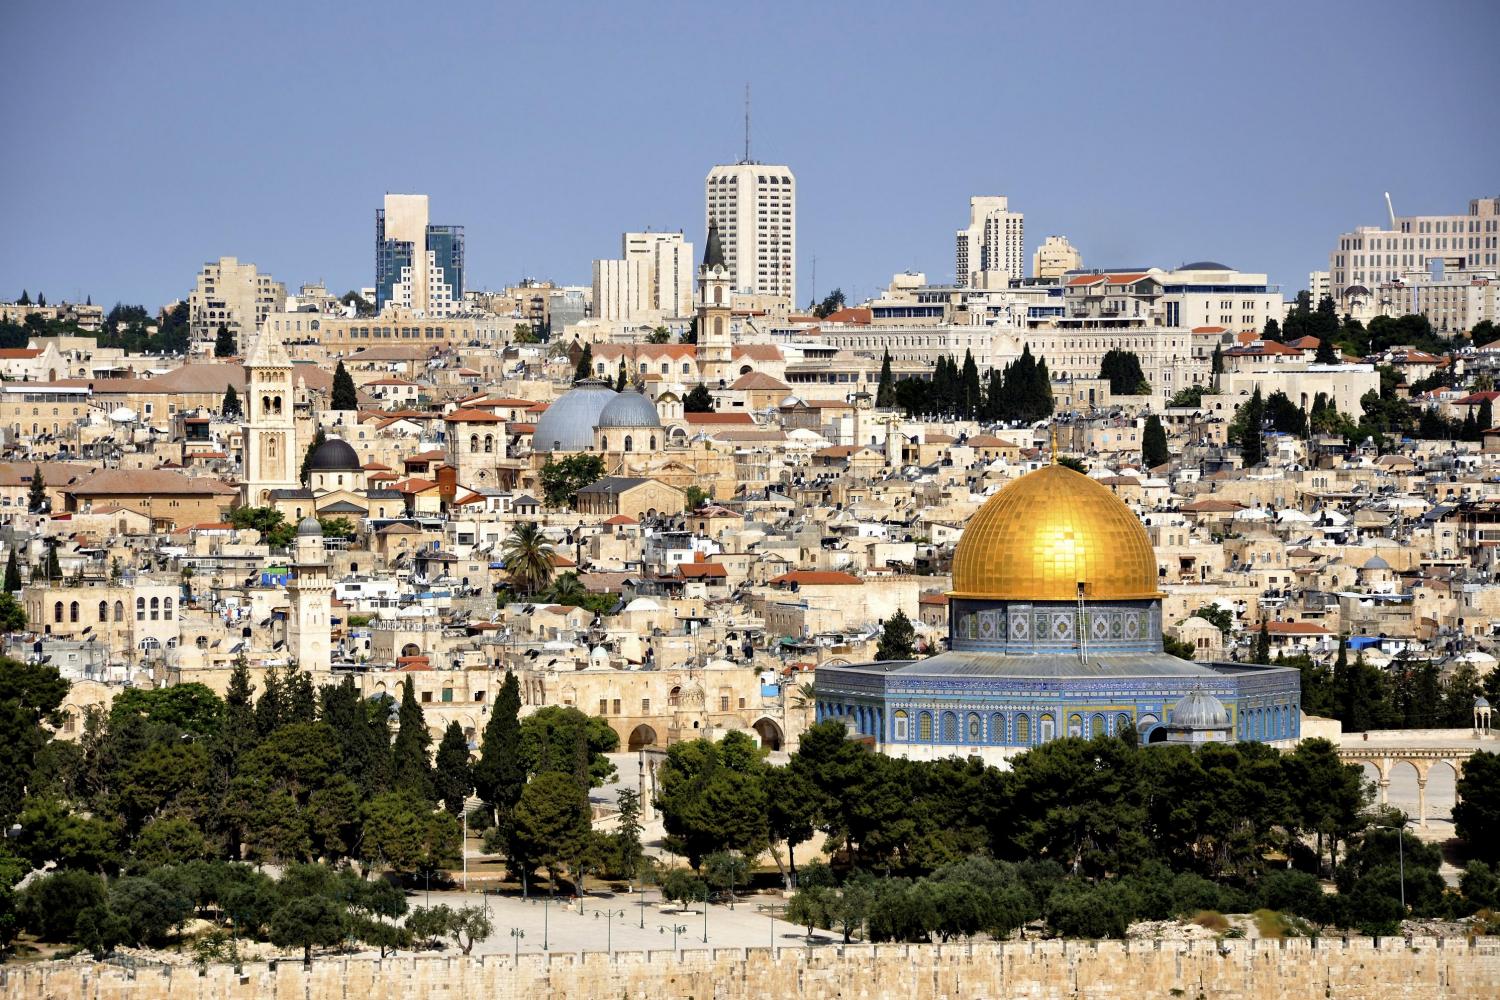 Викторина на знание культурно-религиозных архитектурных памятников. «Иерусалим – город трёх религий »